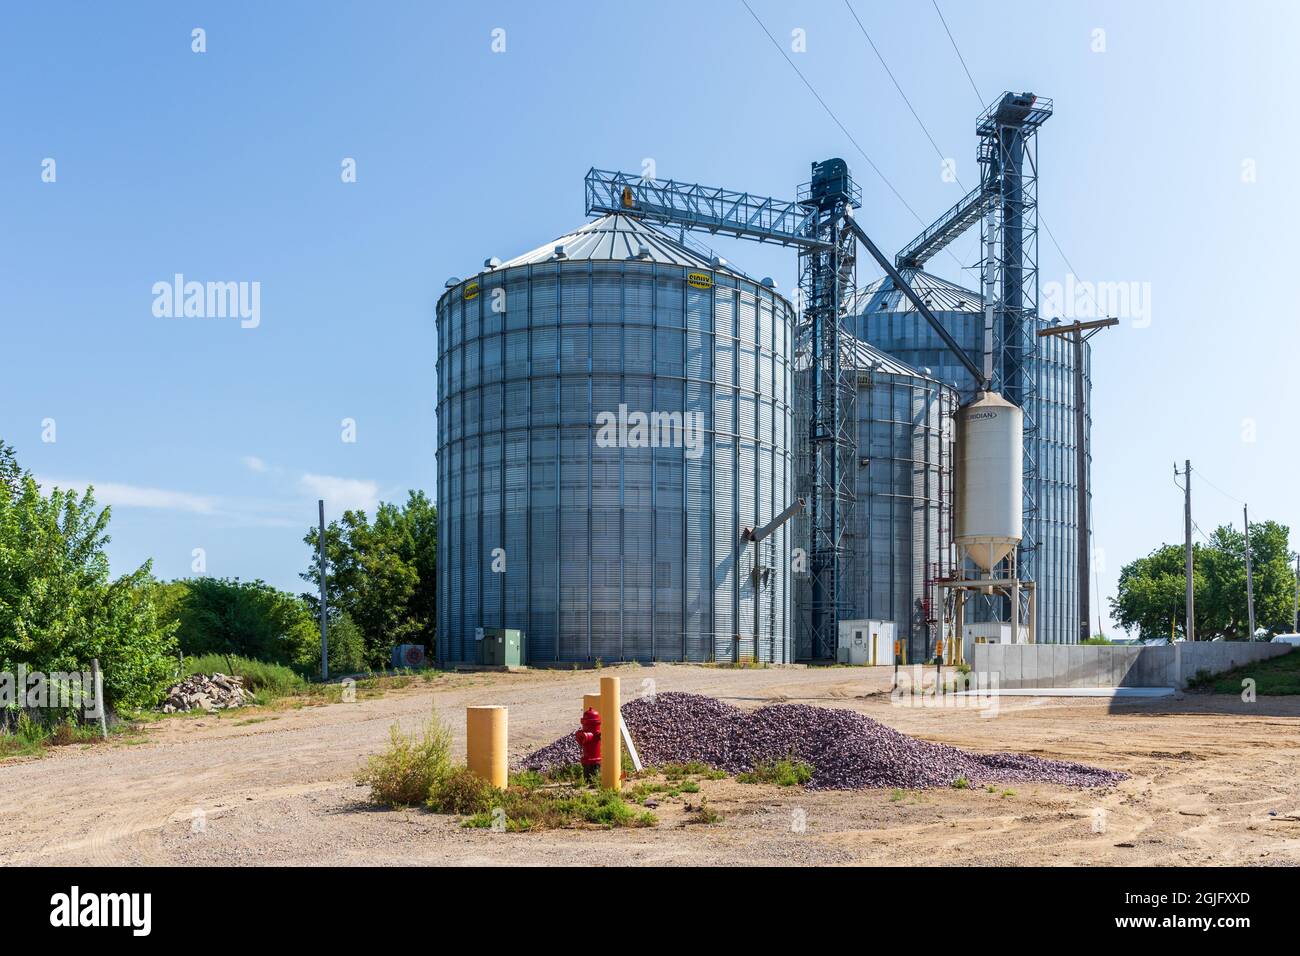 BEAVER CREEK, MN, USA-22 AUGUST 2021: Beaver Creek Co-Op Getreideaufzug und Lagerung. Abbildung zeigt die Lagerung von runden Silos. Stockfoto